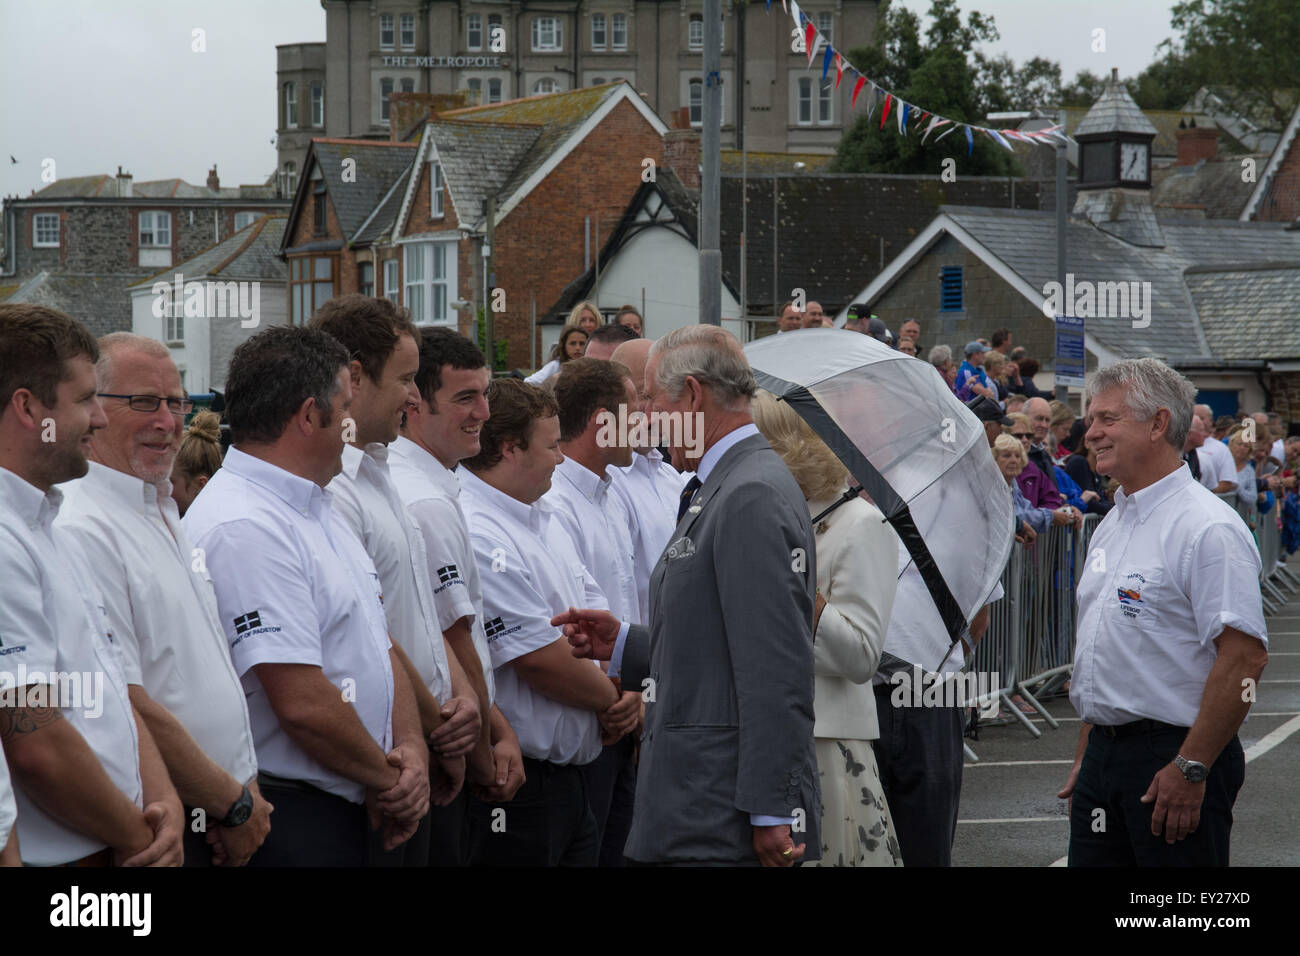 Padstow, Cornwall, UK. 20 juillet 2015. Le duc et la duchesse de Cornouailles de commencer leur visite annuelle dans le duché à Padstow. Le duc vu ici avec l'équipage de l'embarcation locale. Crédit : Simon Maycock/Alamy Live News Banque D'Images